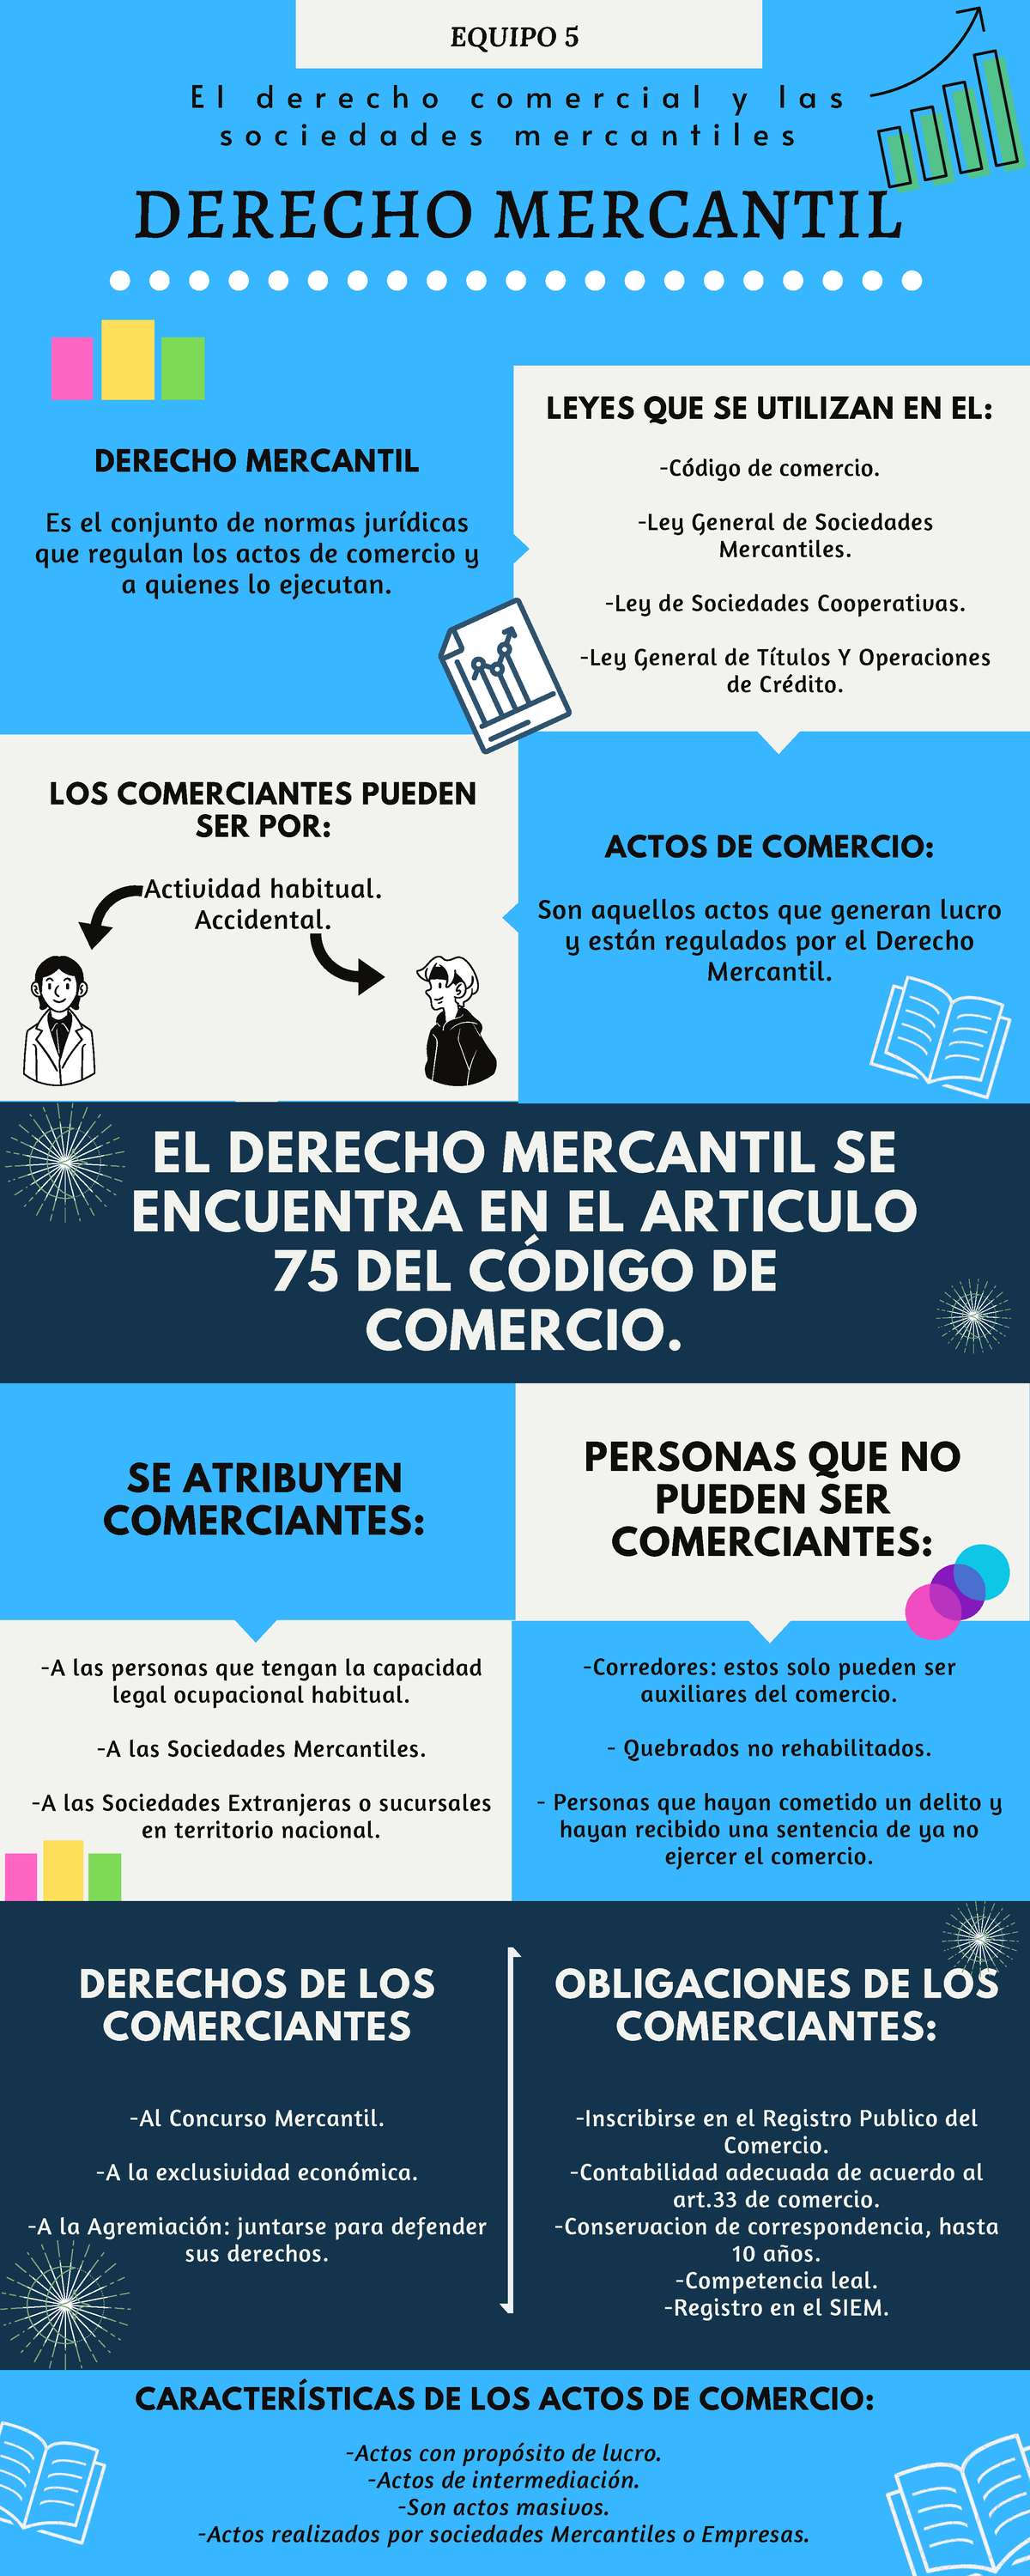 Infografia Equipo 5 El Derecho Mercantil Se Encuentra En El Articulo 75 Del CÓdigo De Comercio 1392